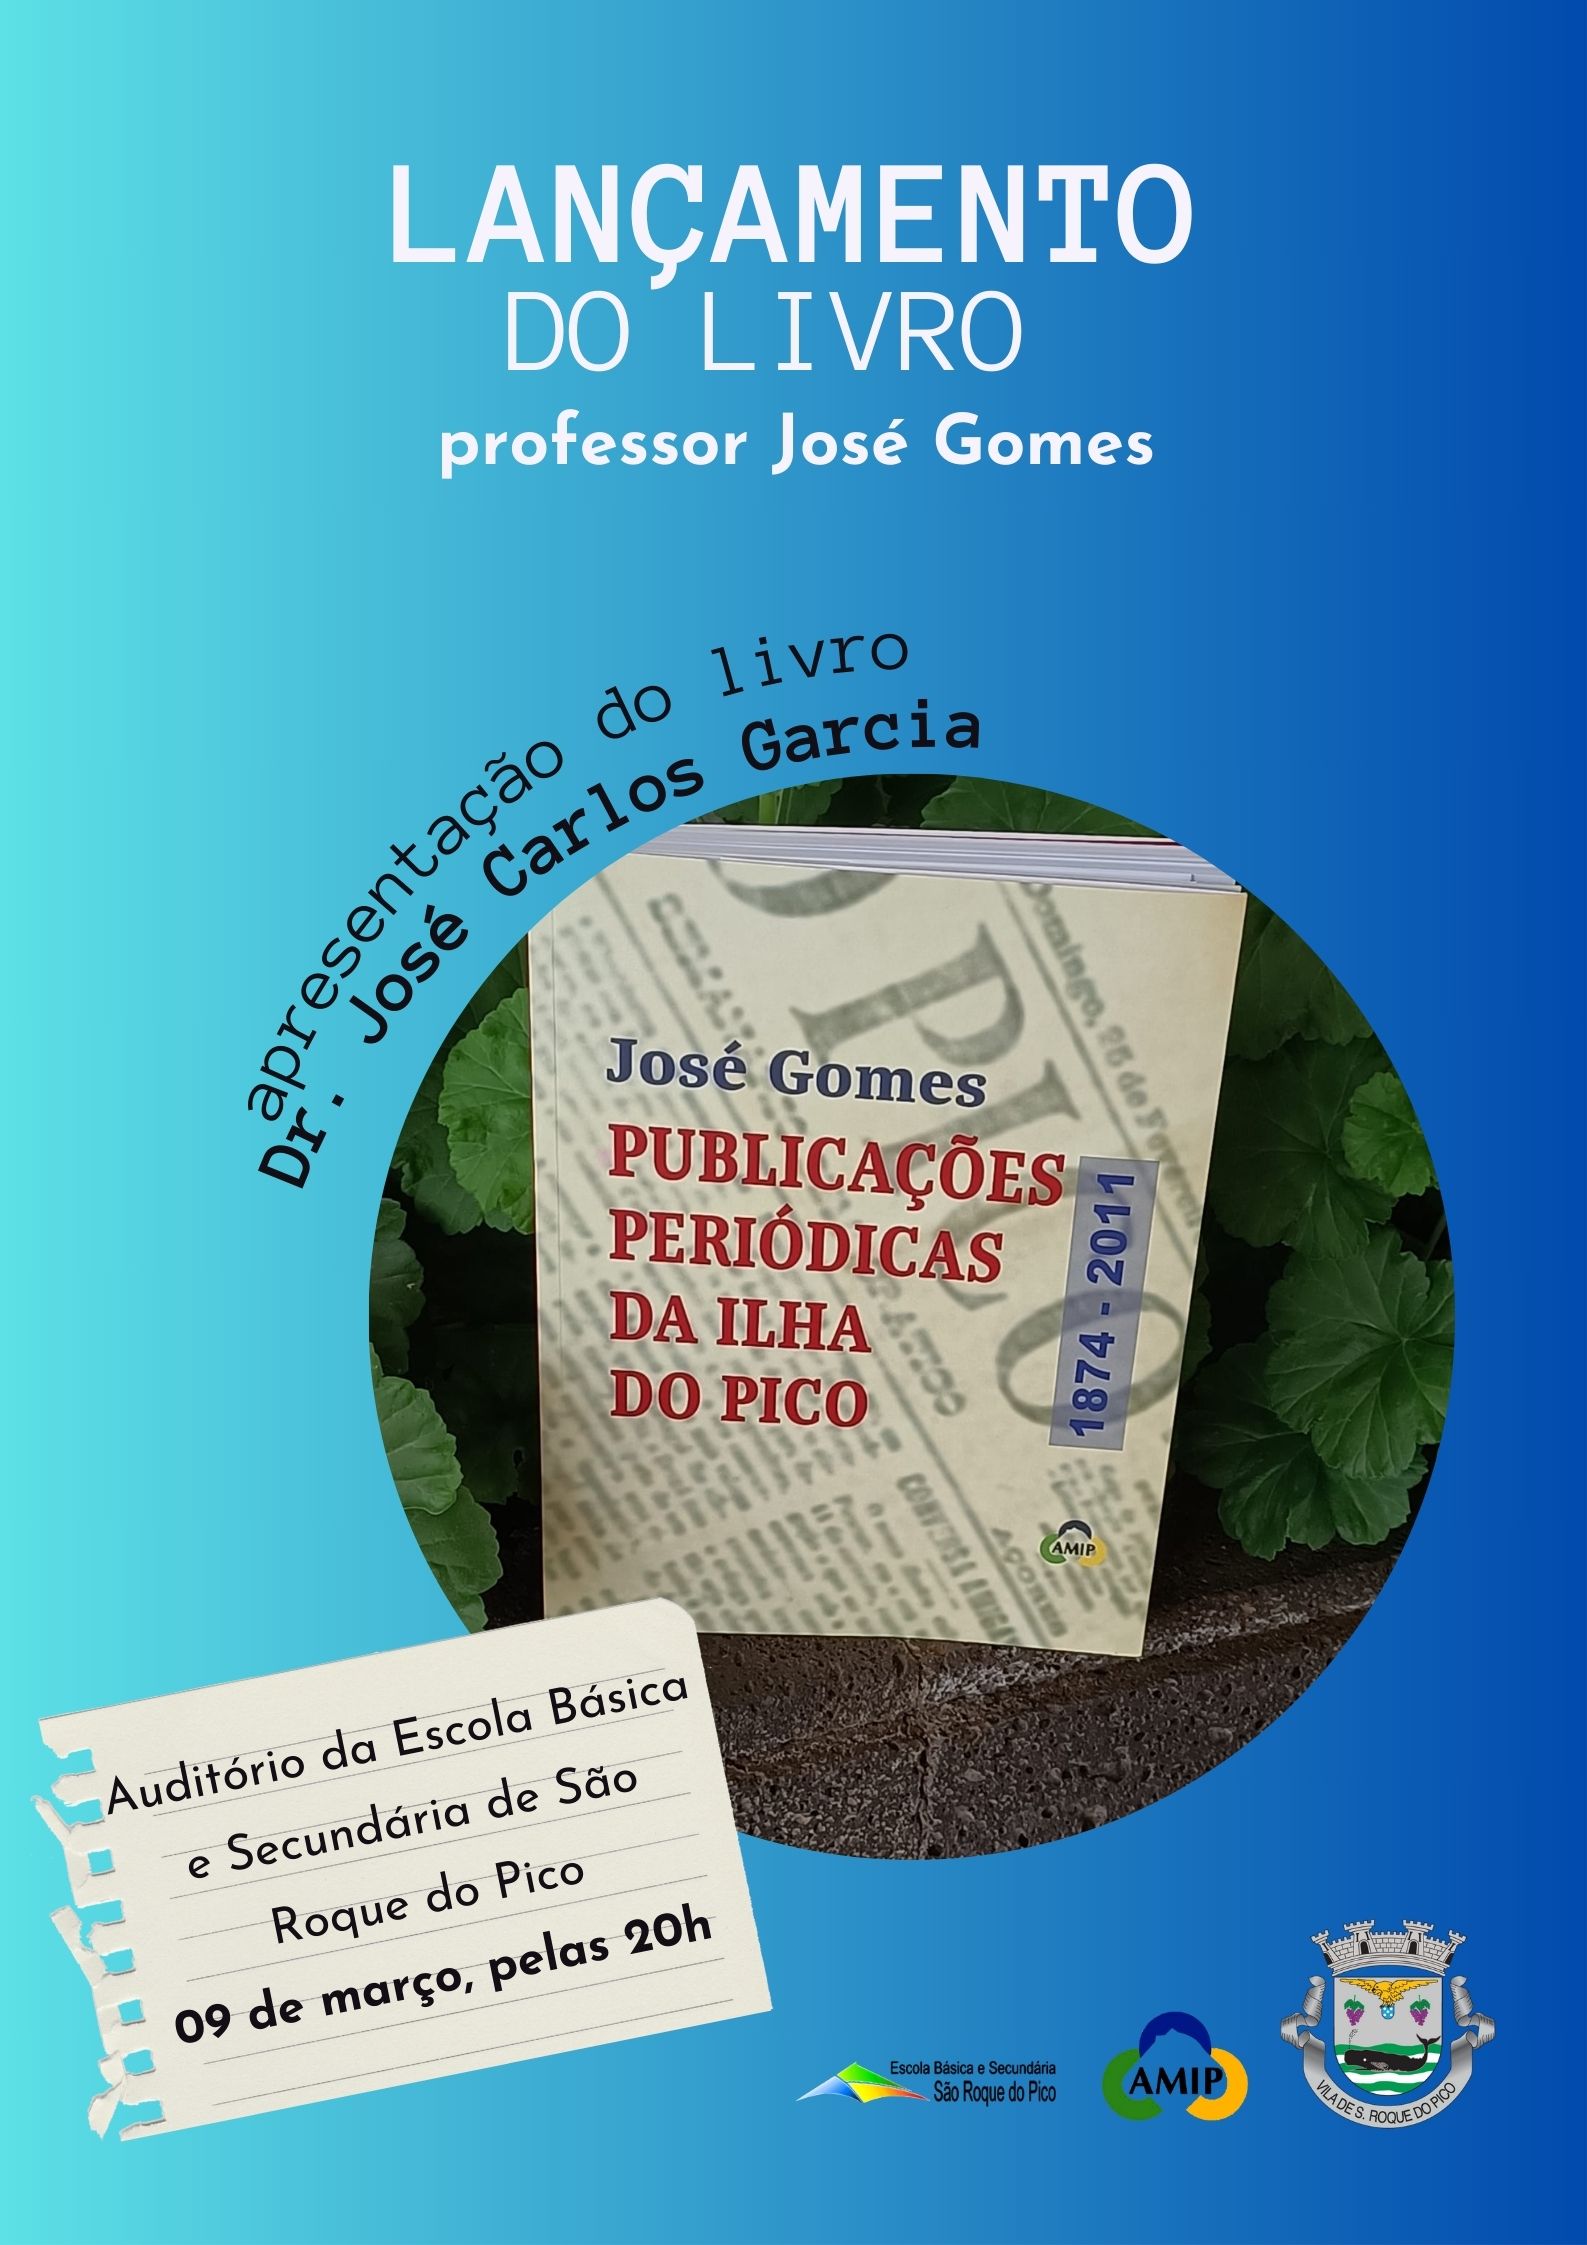 Apresentação do livro do Professor José Gomes